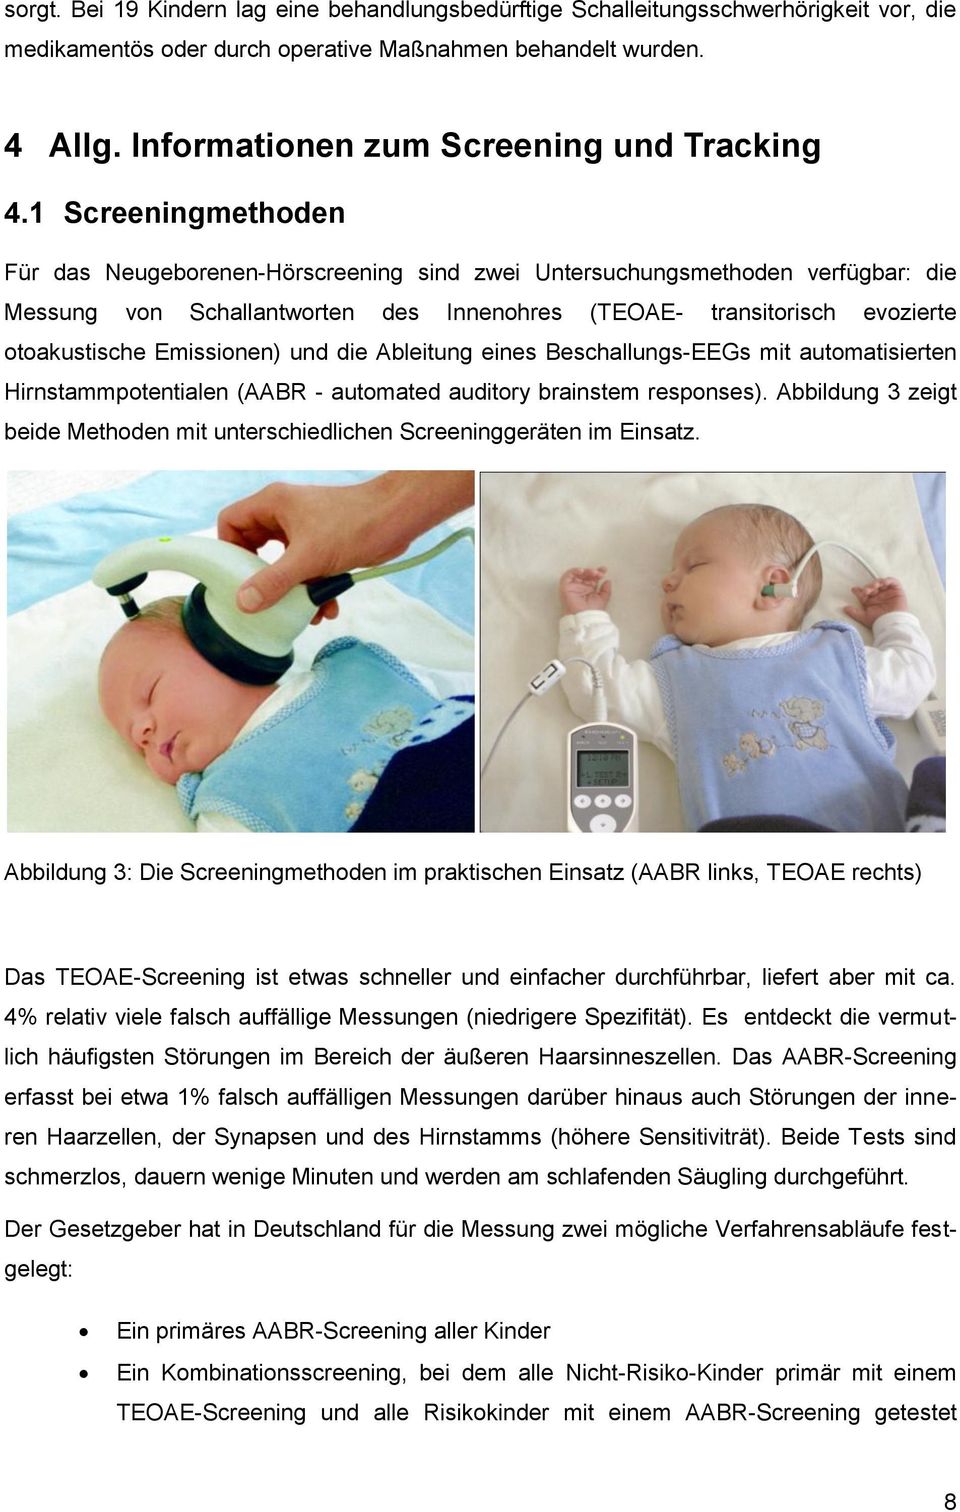 1 Screeningmethoden Für das Neugeborenen-Hörscreening sind zwei Untersuchungsmethoden verfügbar: die Messung von Schallantworten des Innenohres (TEOAE- transitorisch evozierte otoakustische